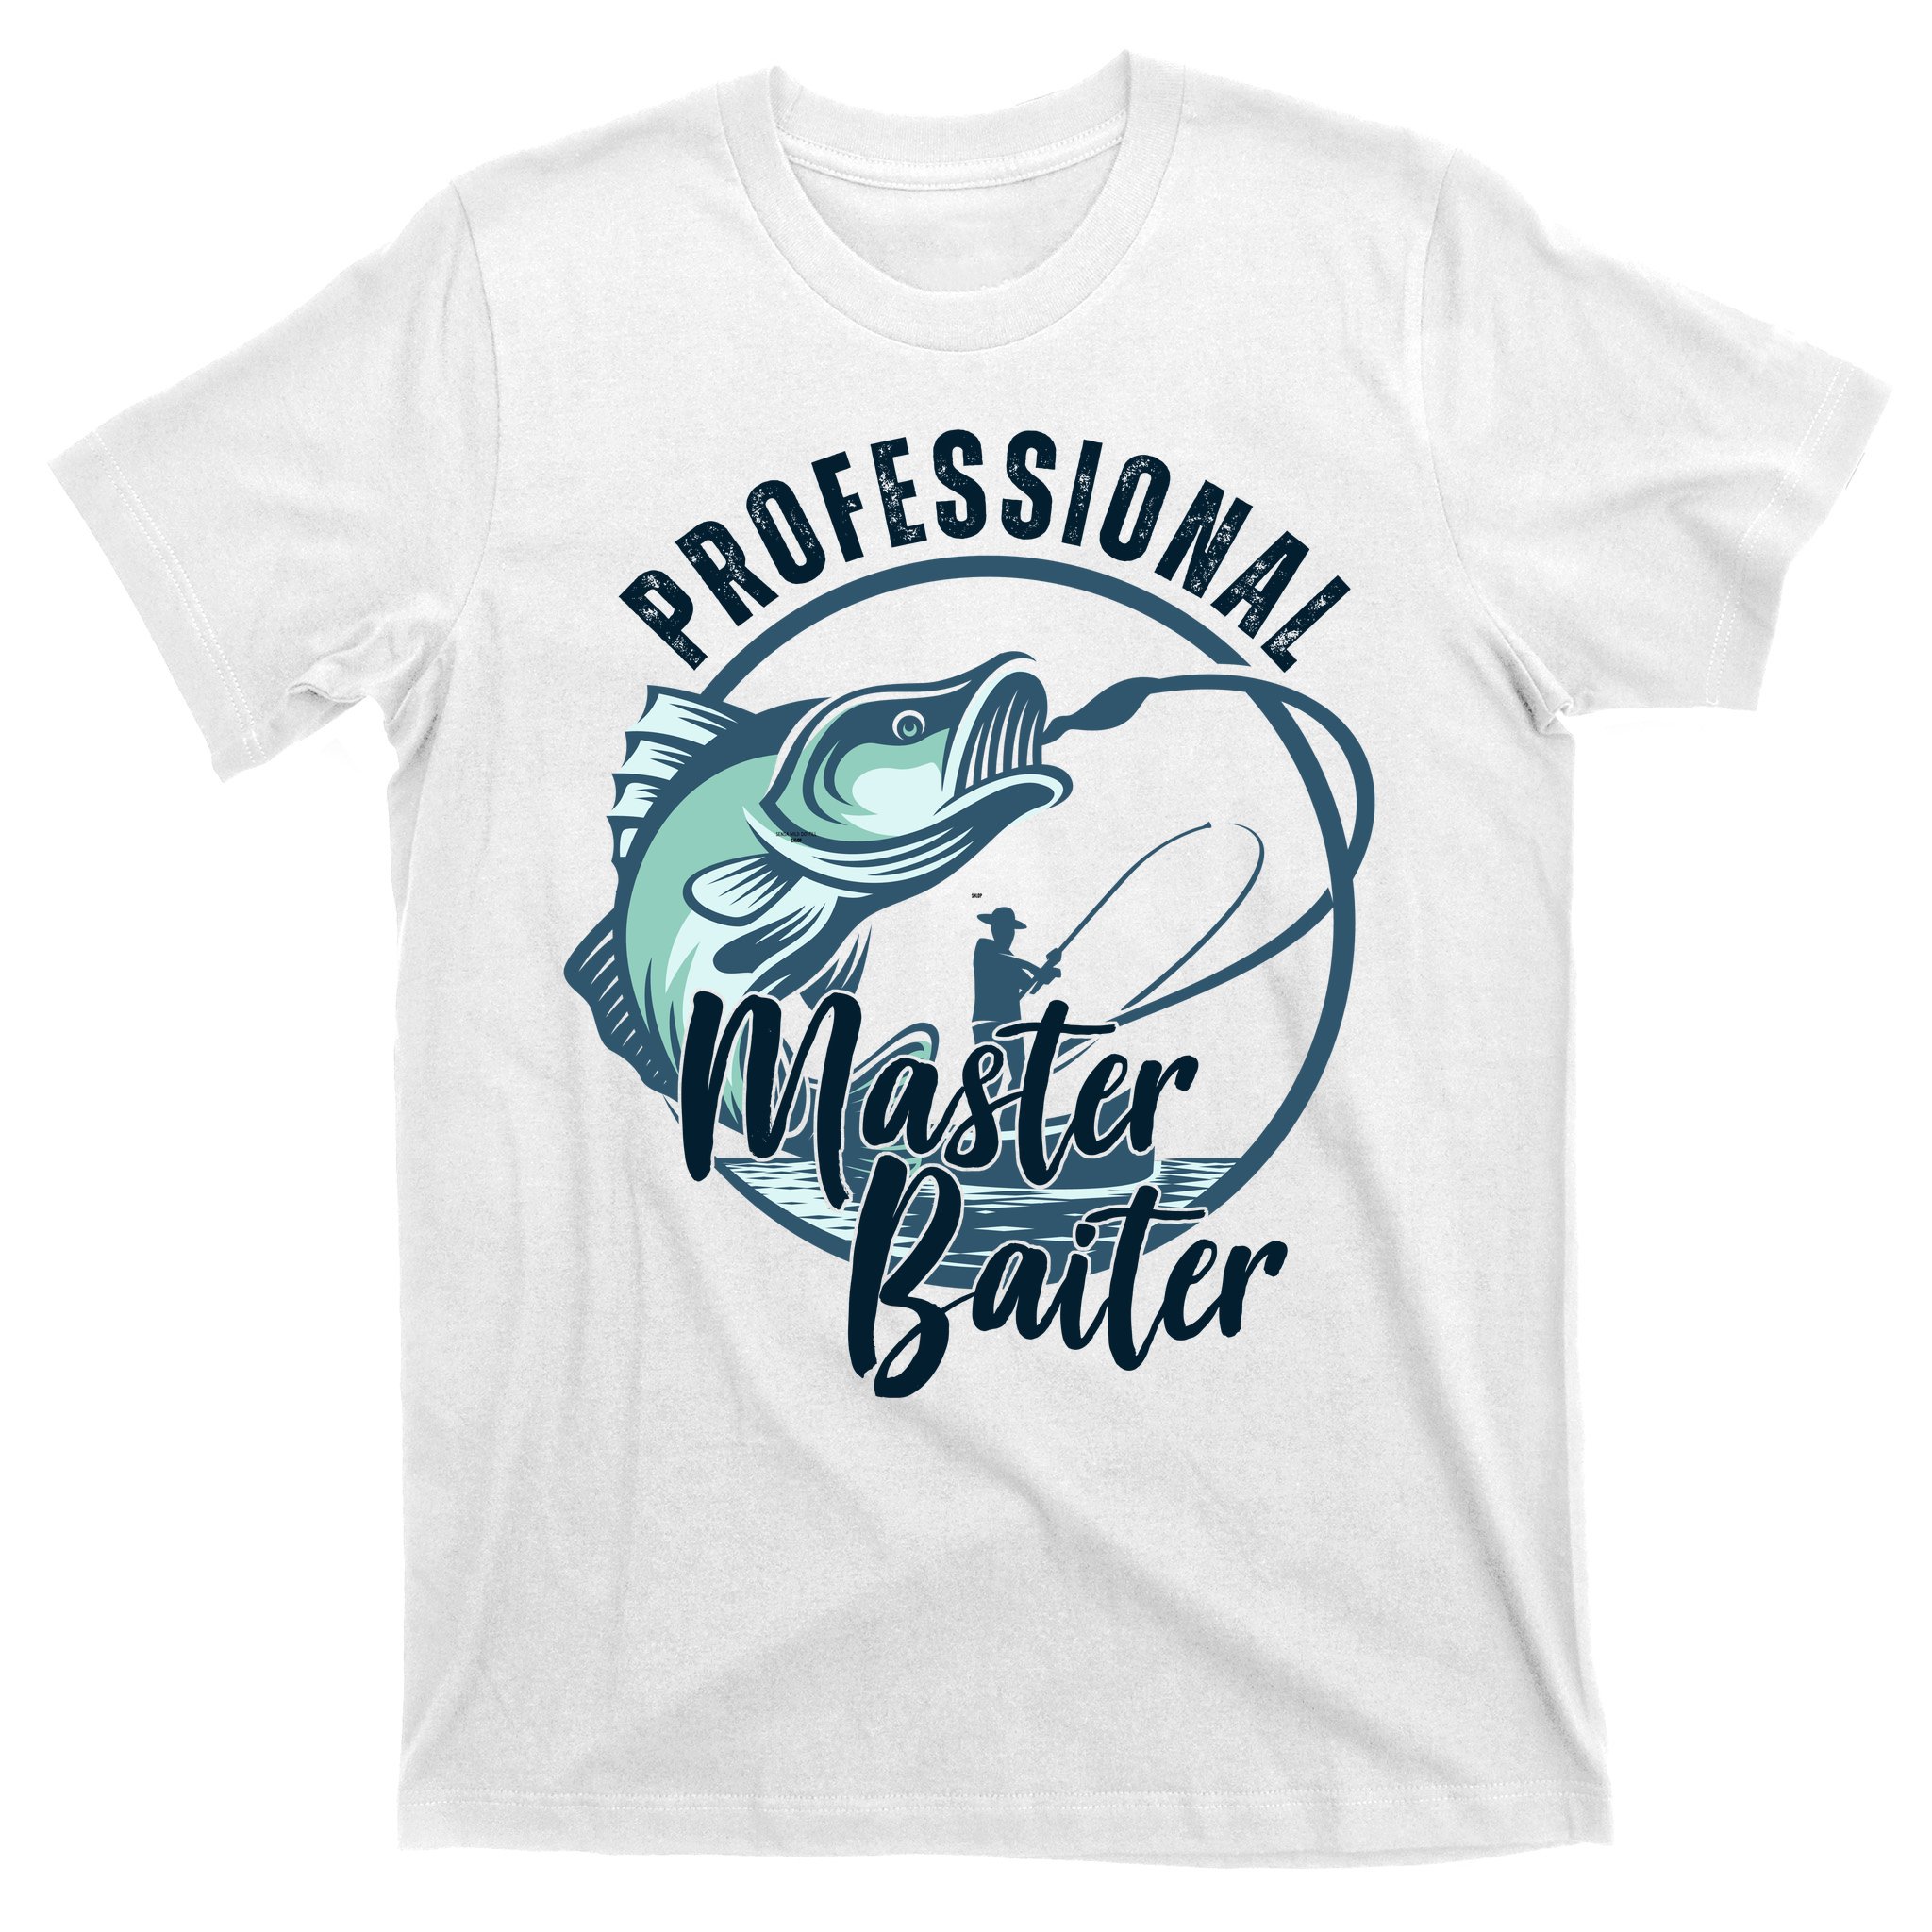 Master Baiter - World's Best Fisherman Long Sleeve T-Shirt